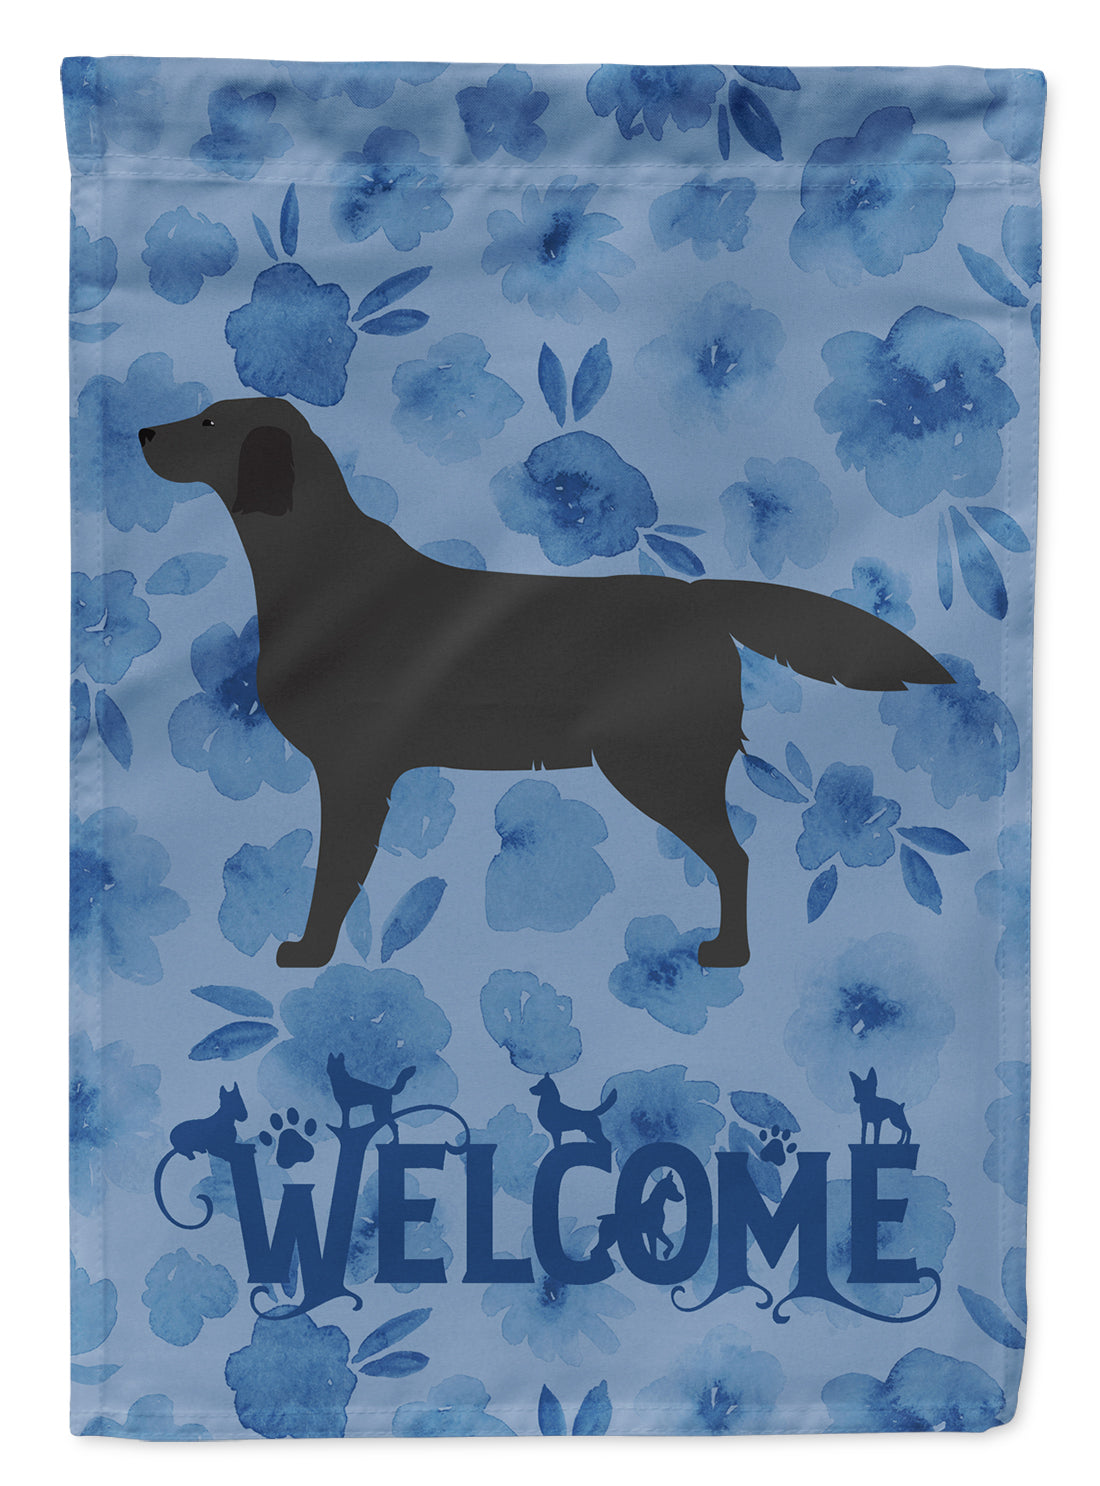 Black Labrador Retriever Welcome Flag Canvas House Size CK6135CHF